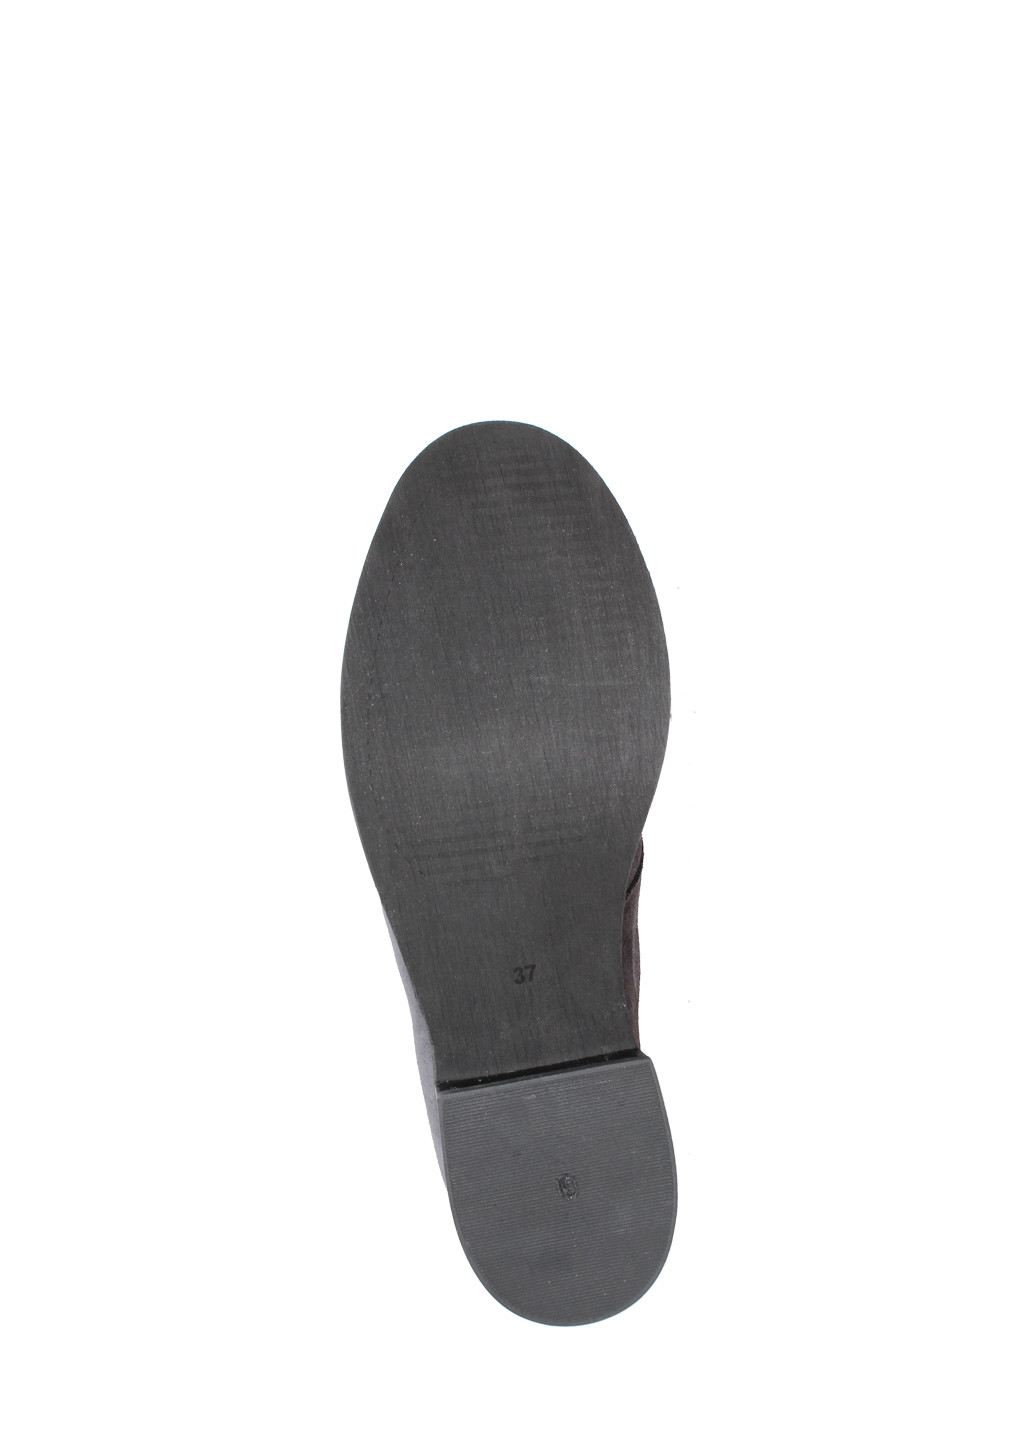 Осенние ботинки dr715-11 темно-серый Dalis из натуральной замши